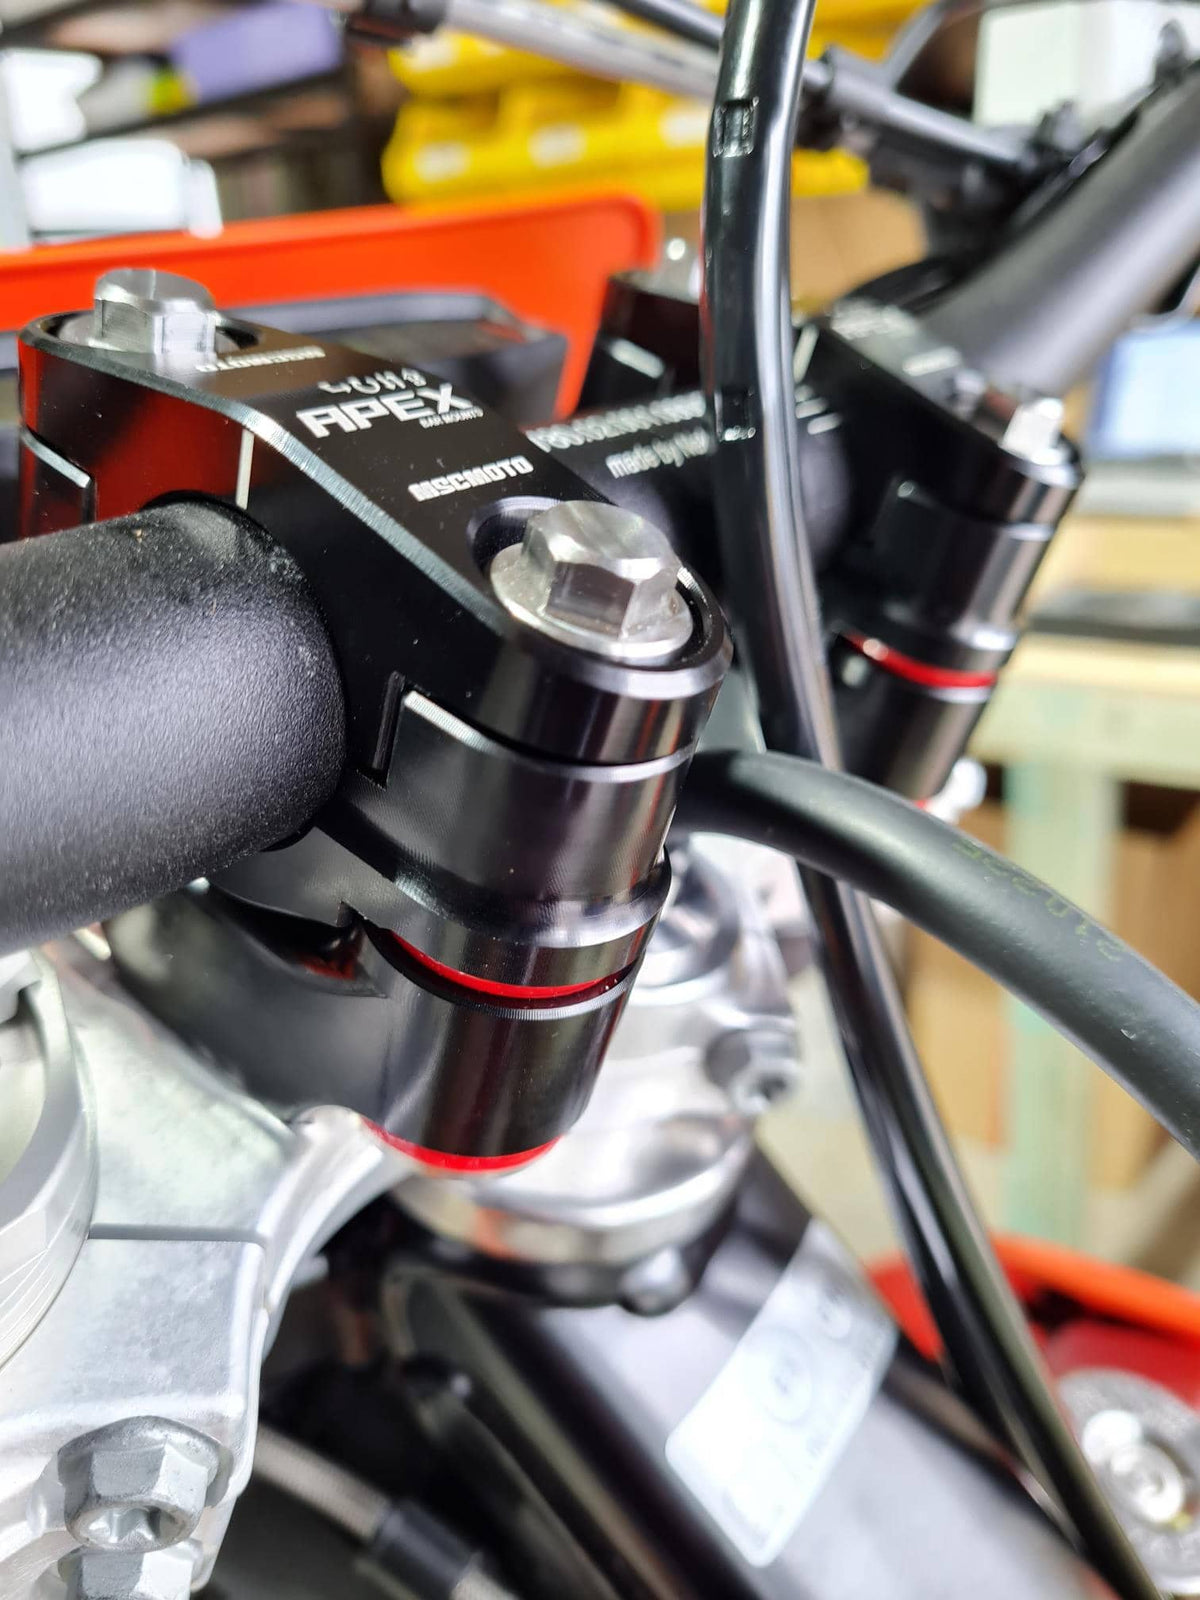 APEX Anti Vibration Bar Mount System Orange (AMB01-OR) - KTM, Husqvarna, GasGas, Beta, Sherco, Husaberg Motocycle Steering Dampers MSC Moto 